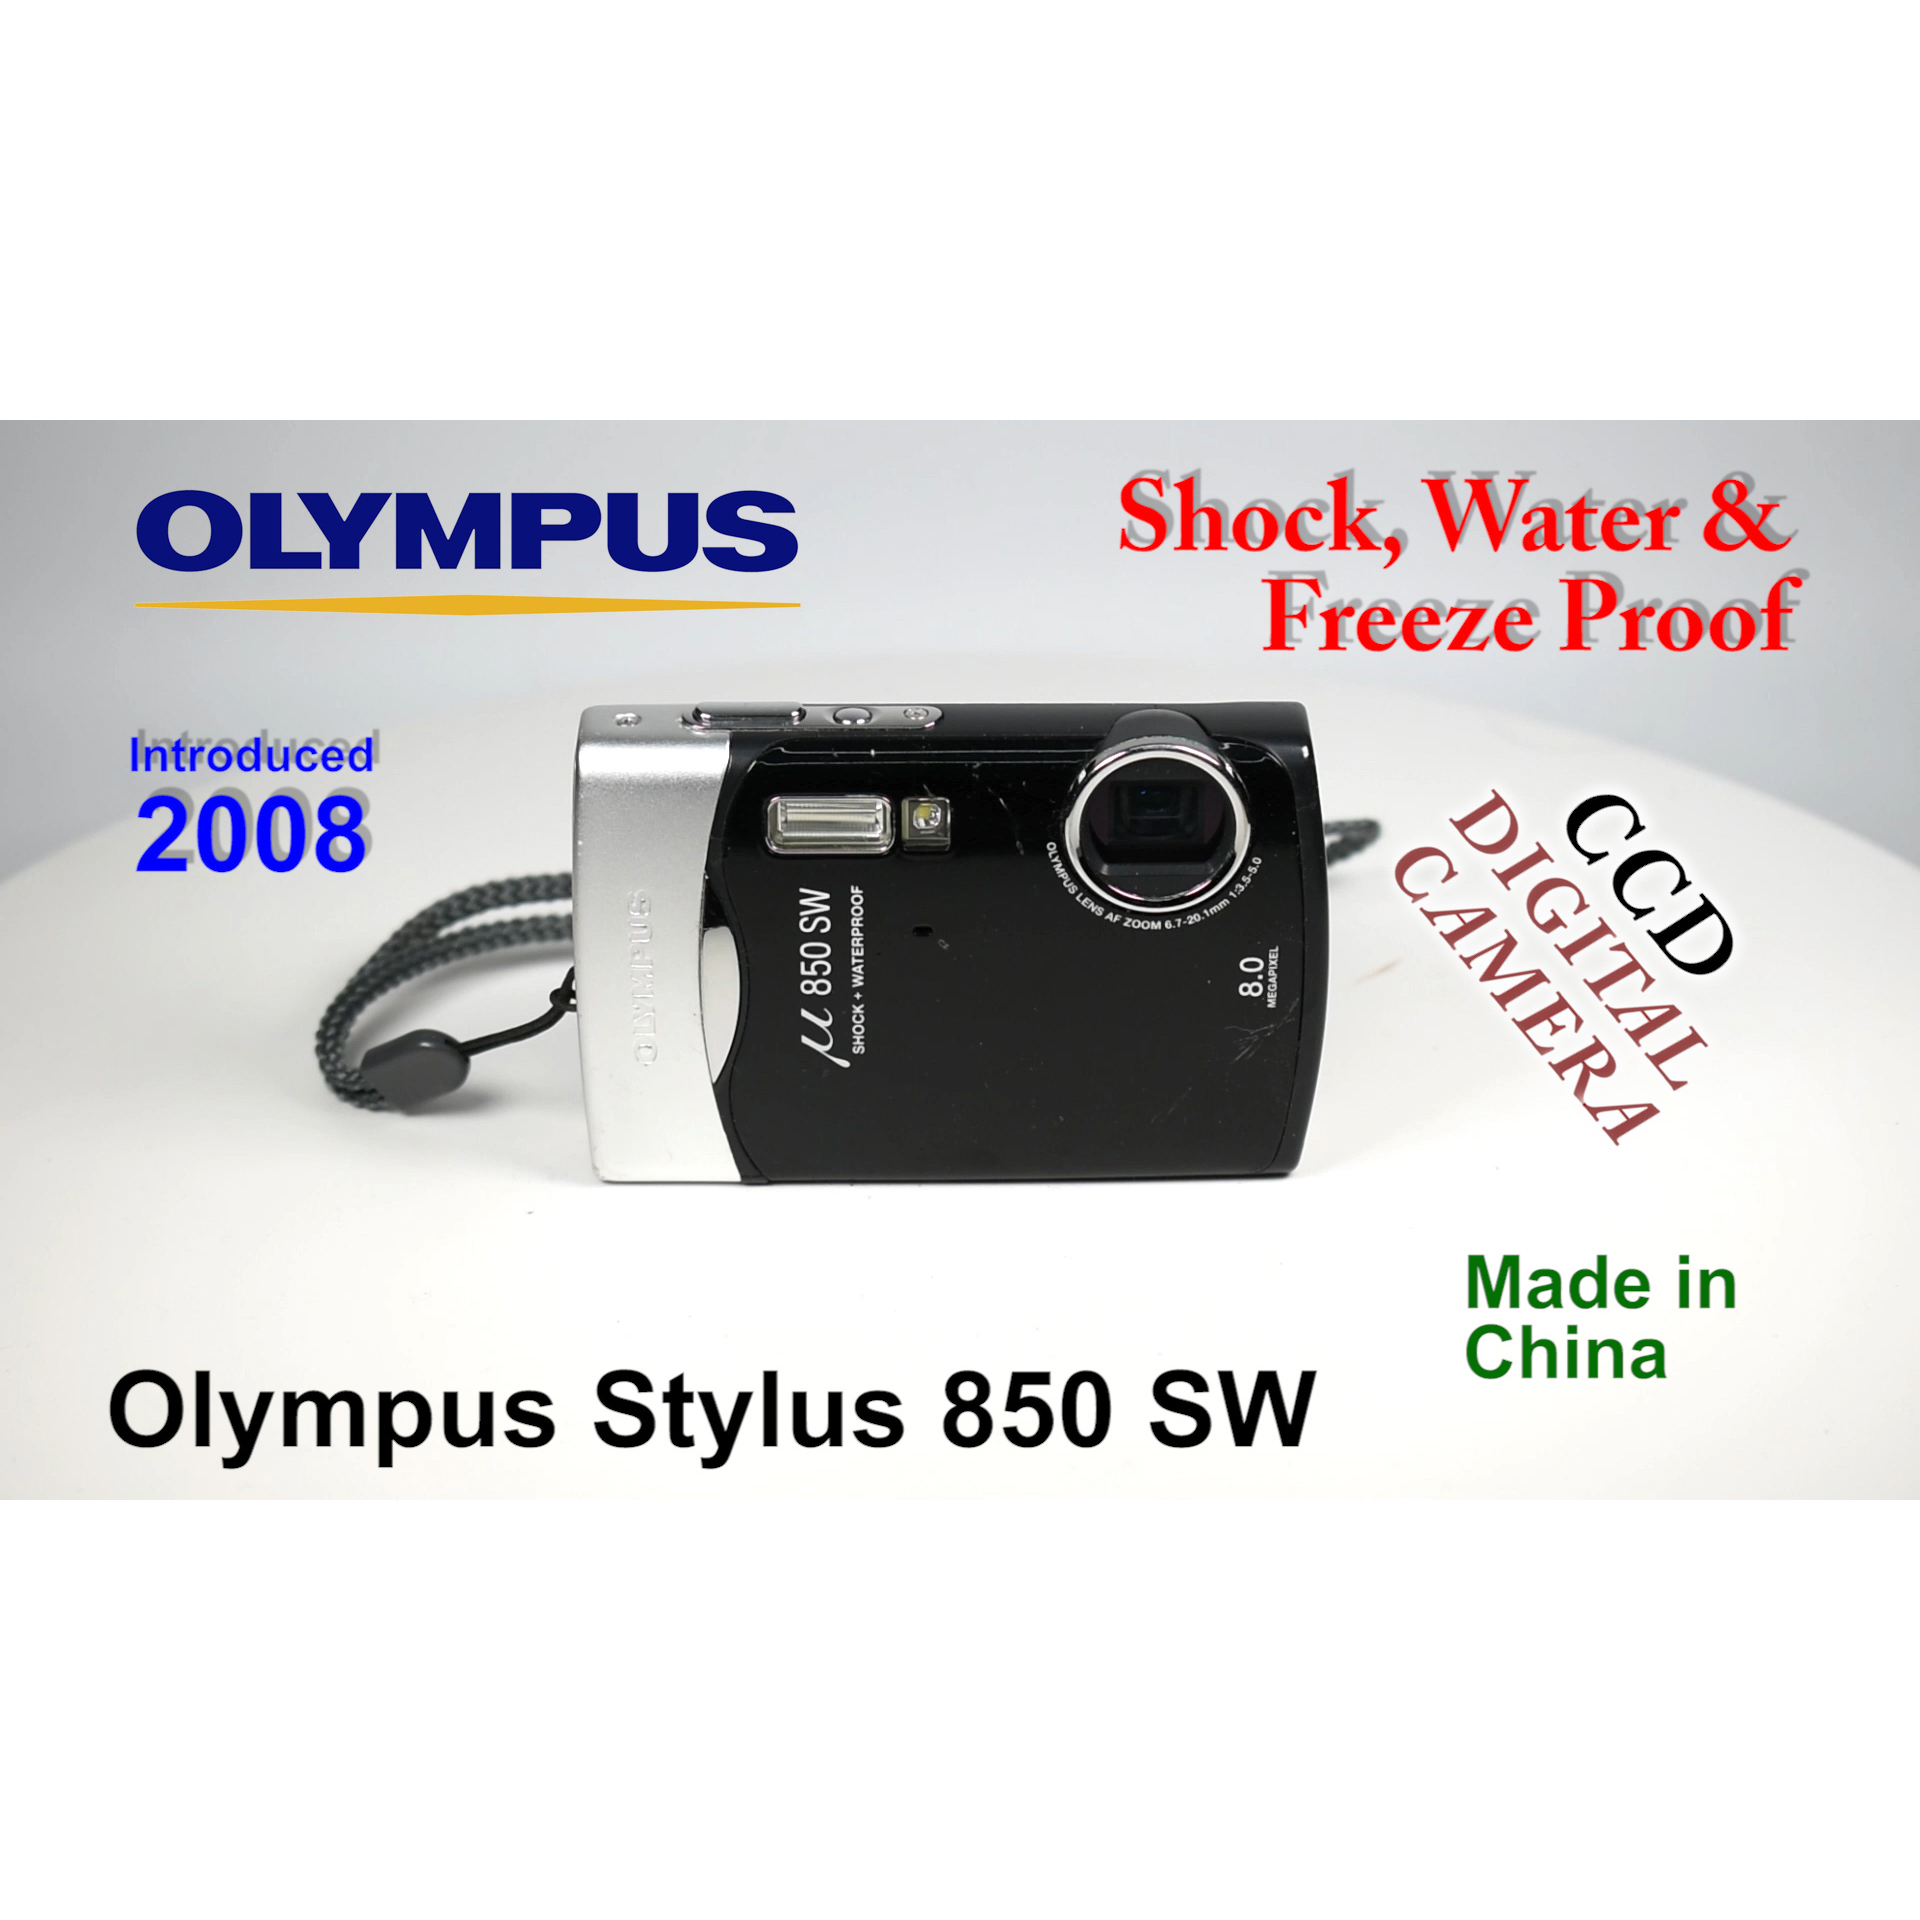 2008 Olympus Stylus 850 SW – CCD Digital Camera